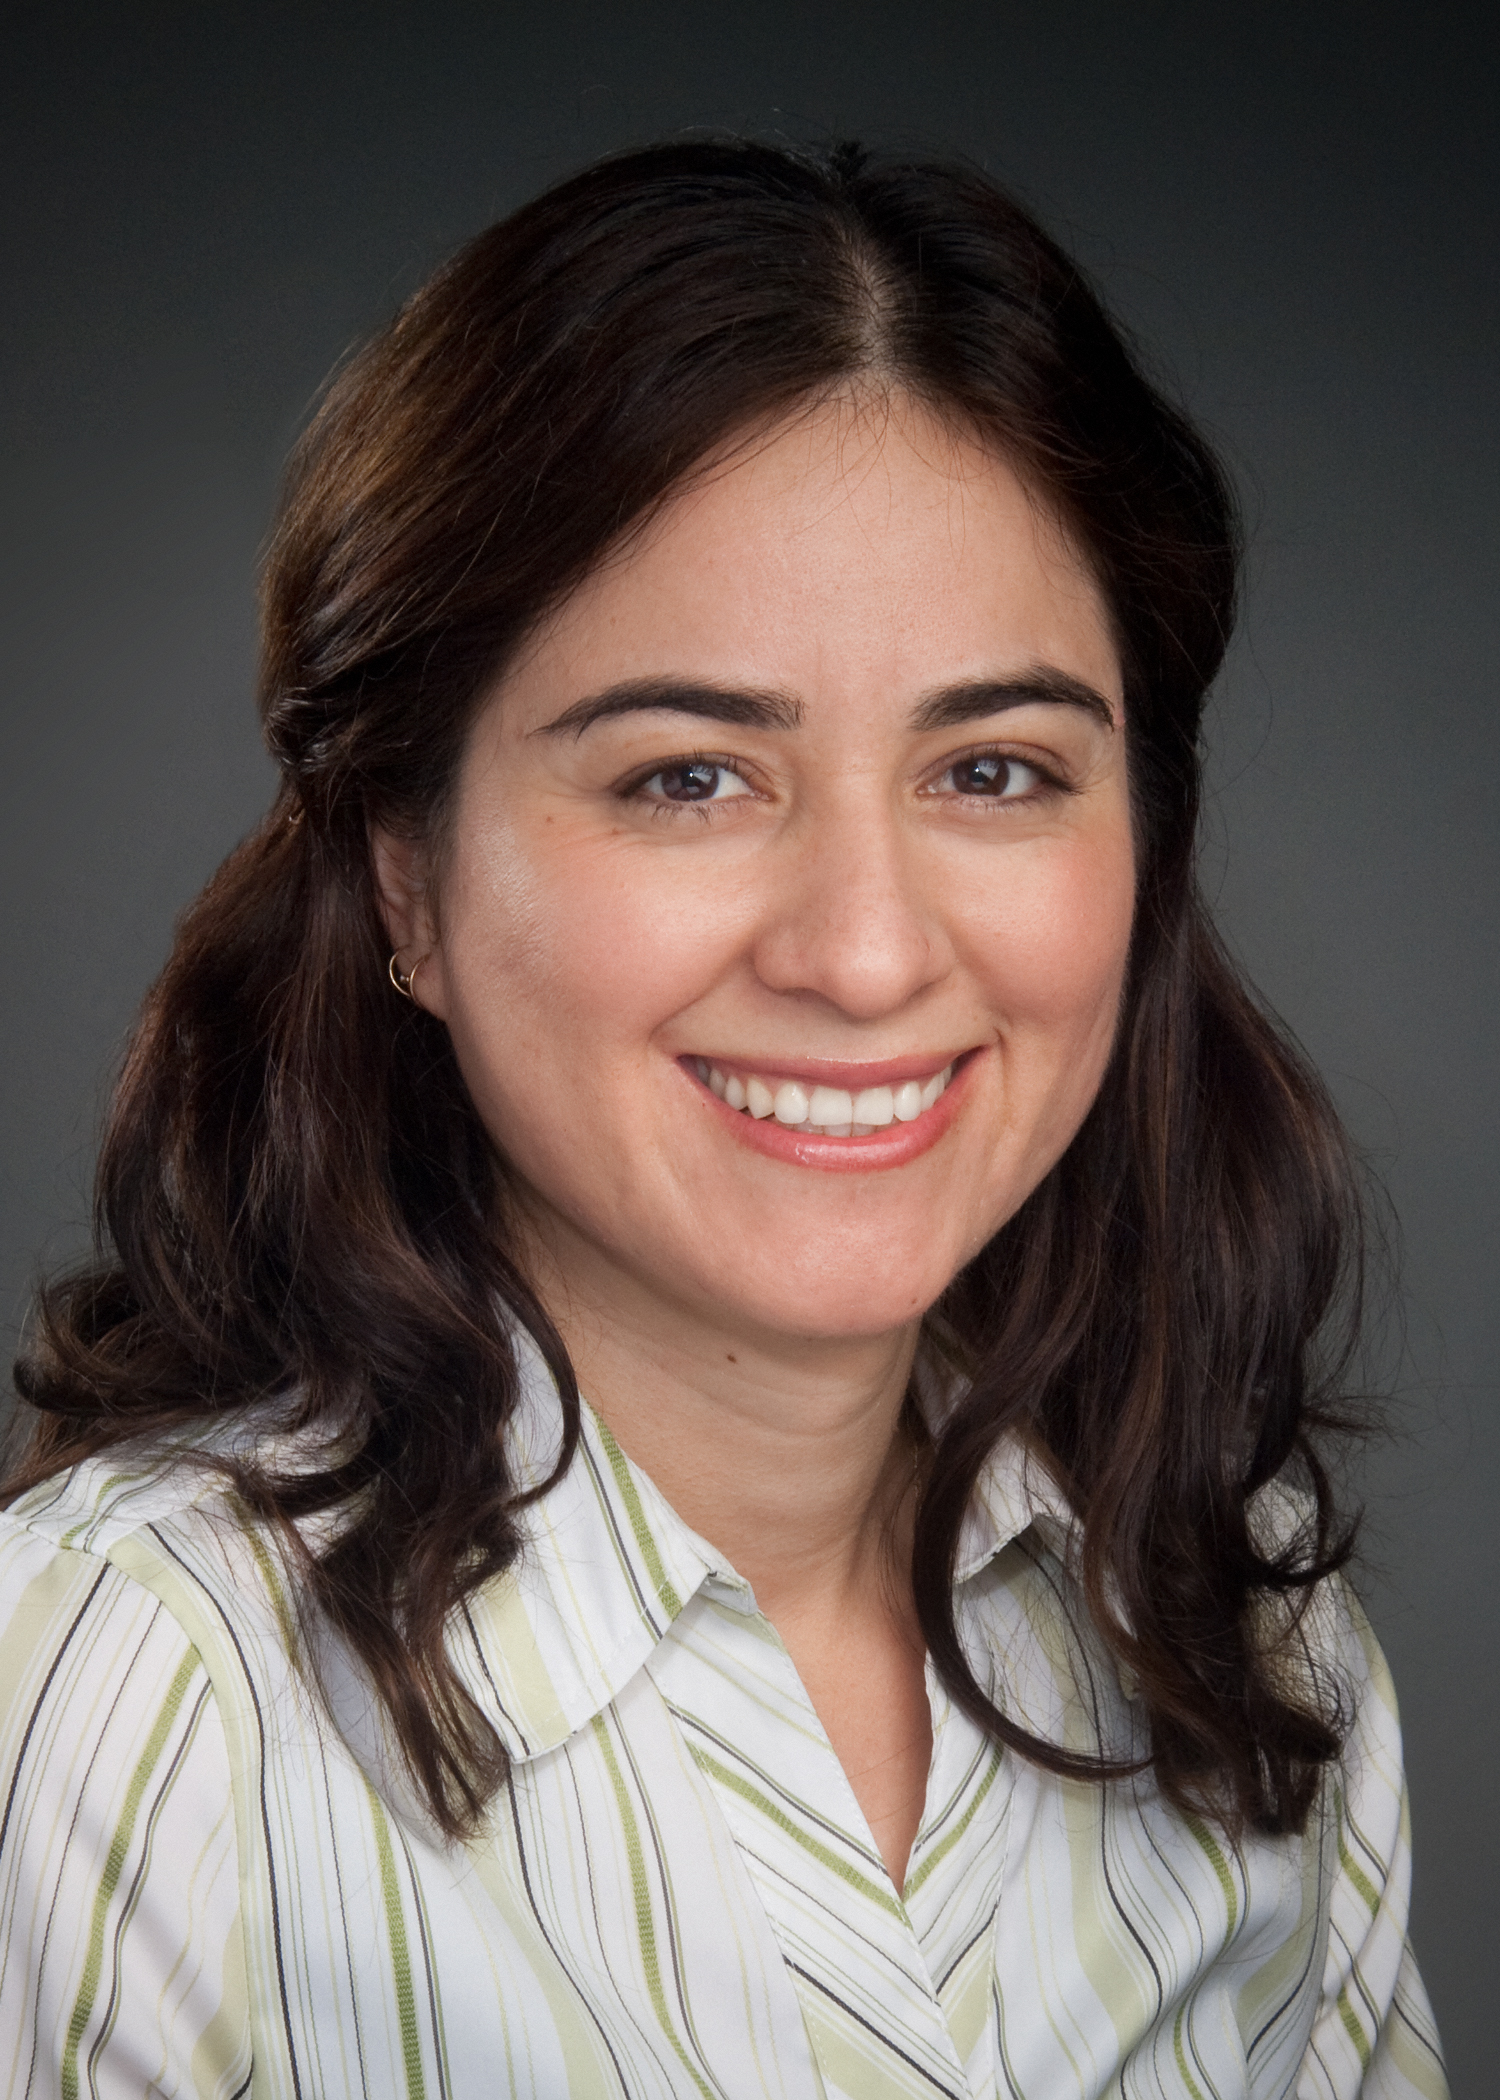 Fatima Rivas, Ph.D.